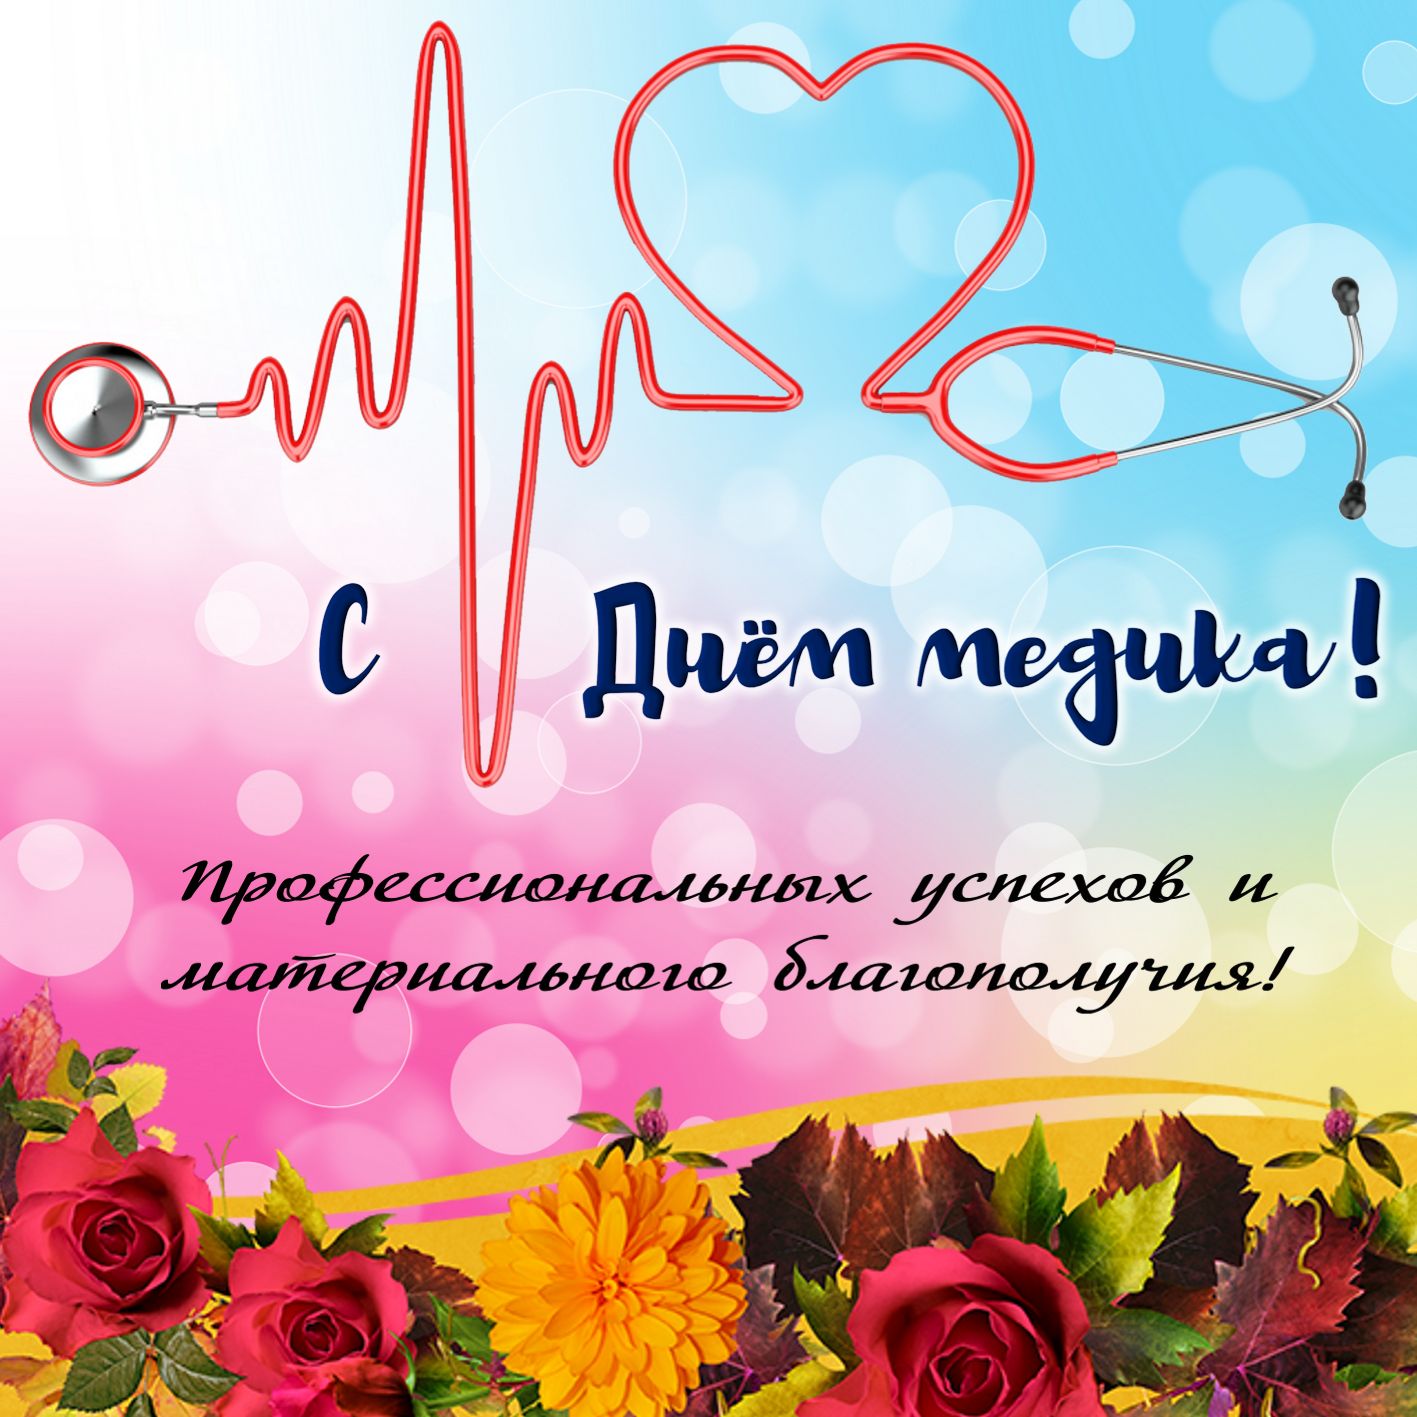 С Днем медика! открытки красивые и картинки гифы